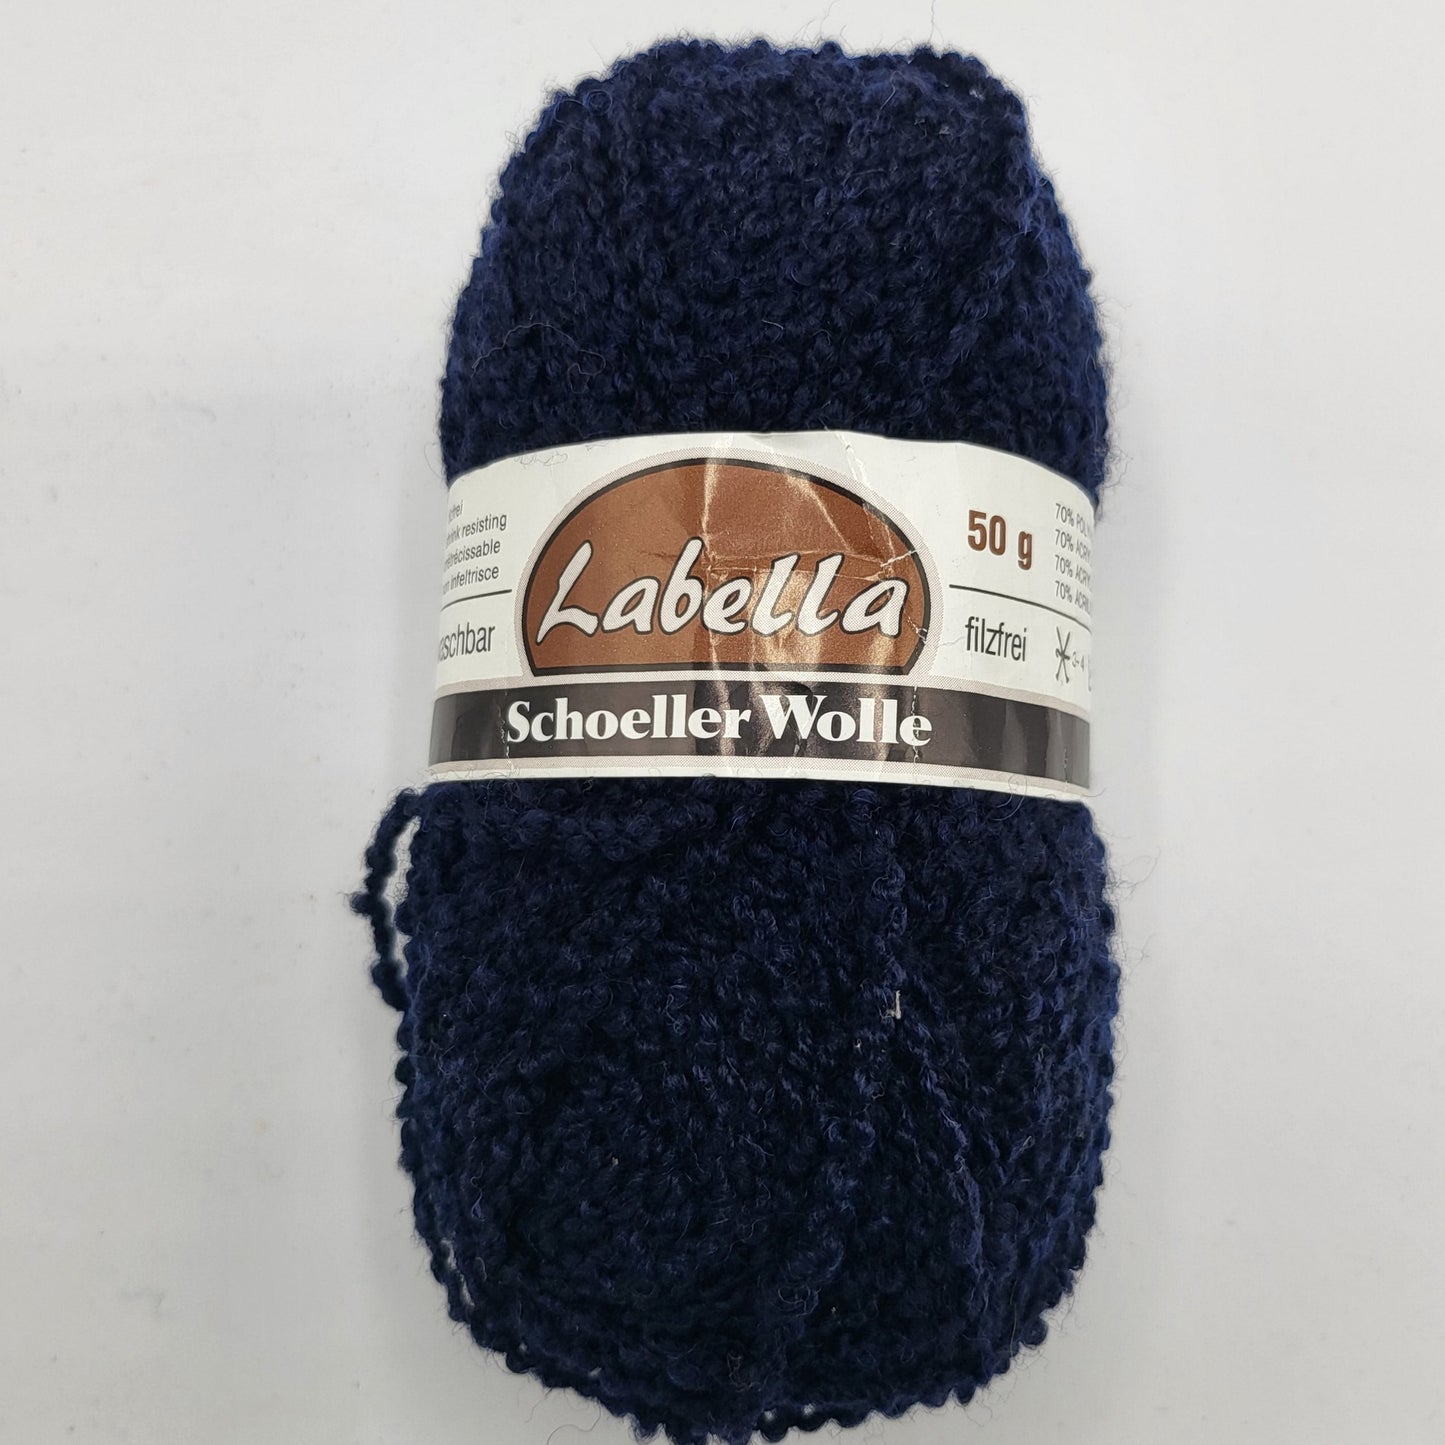 Schoeller Wolle Labella 50g 115m Schurwolle Strapazierfähigkeit und natürlicher Wärme.